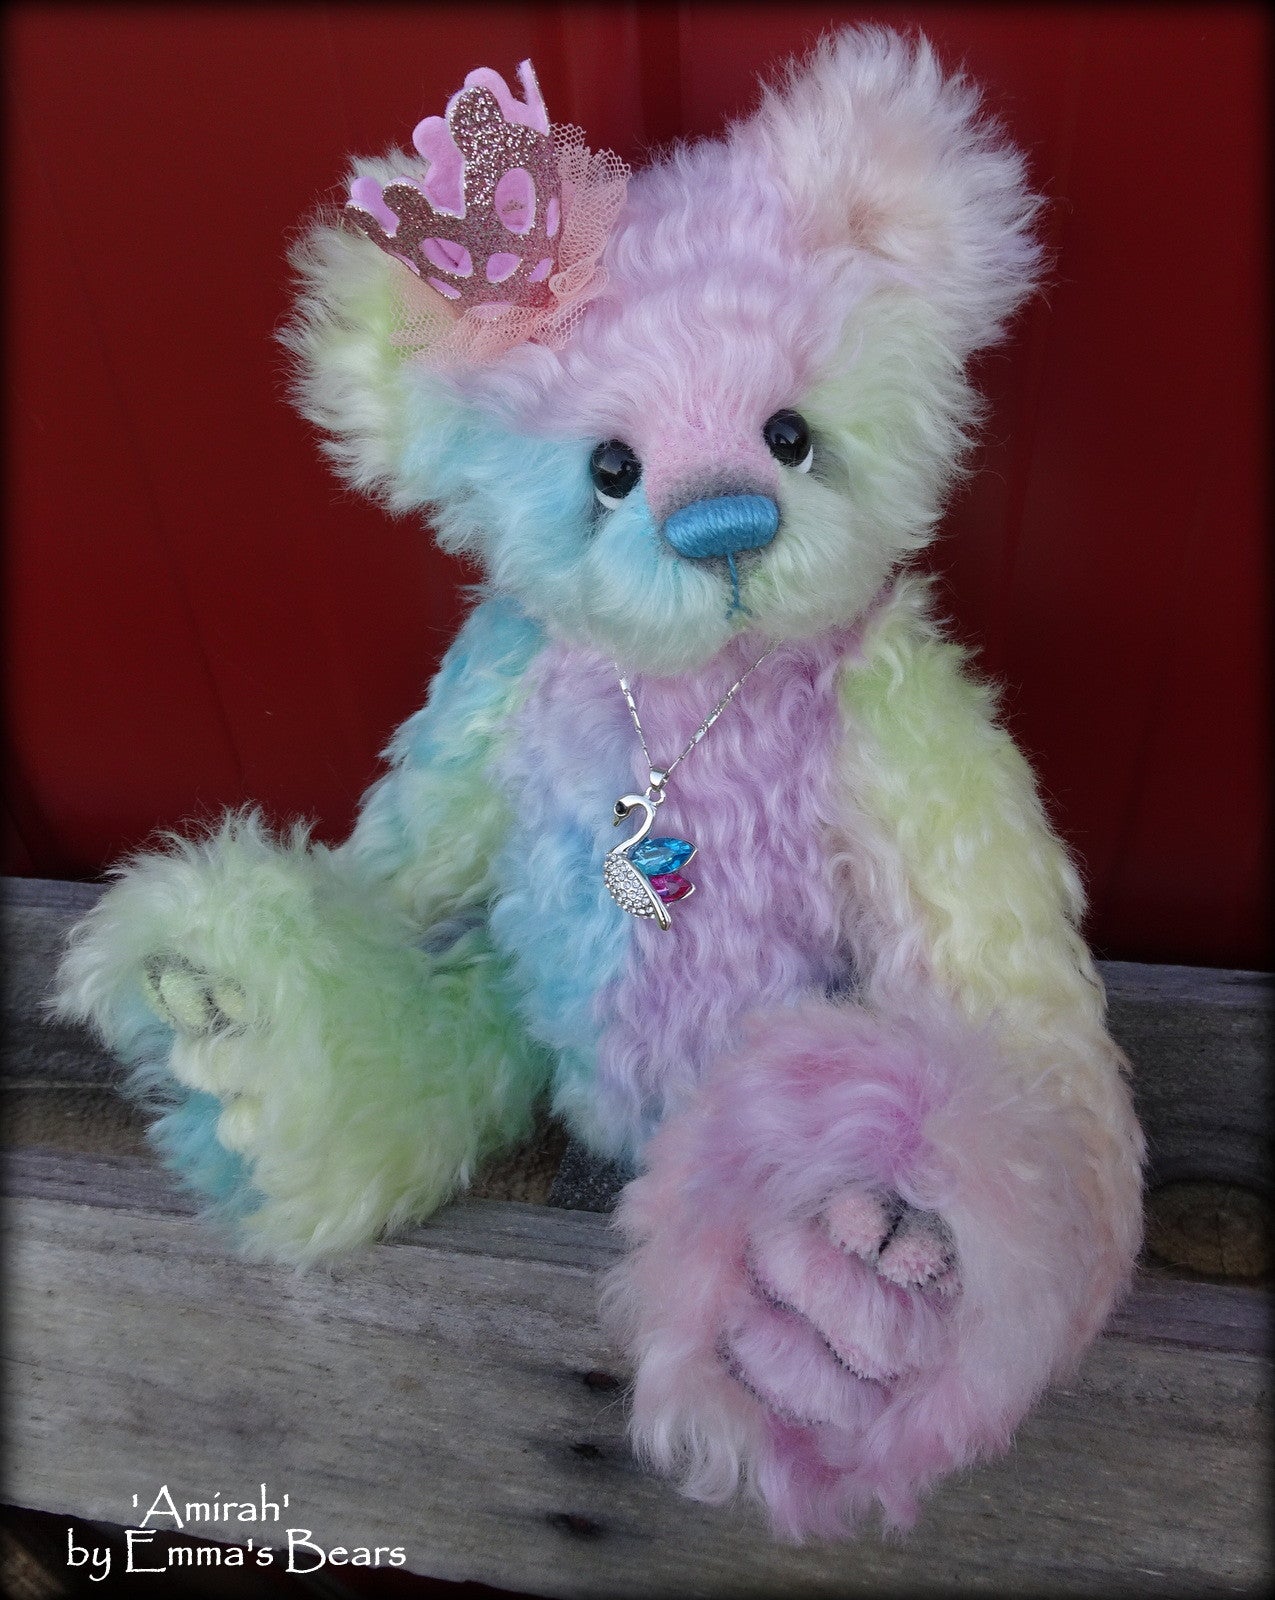 Amirah - 12" hand dyed rainbow mohair Artist Bear by Emmas Bears - OOAK